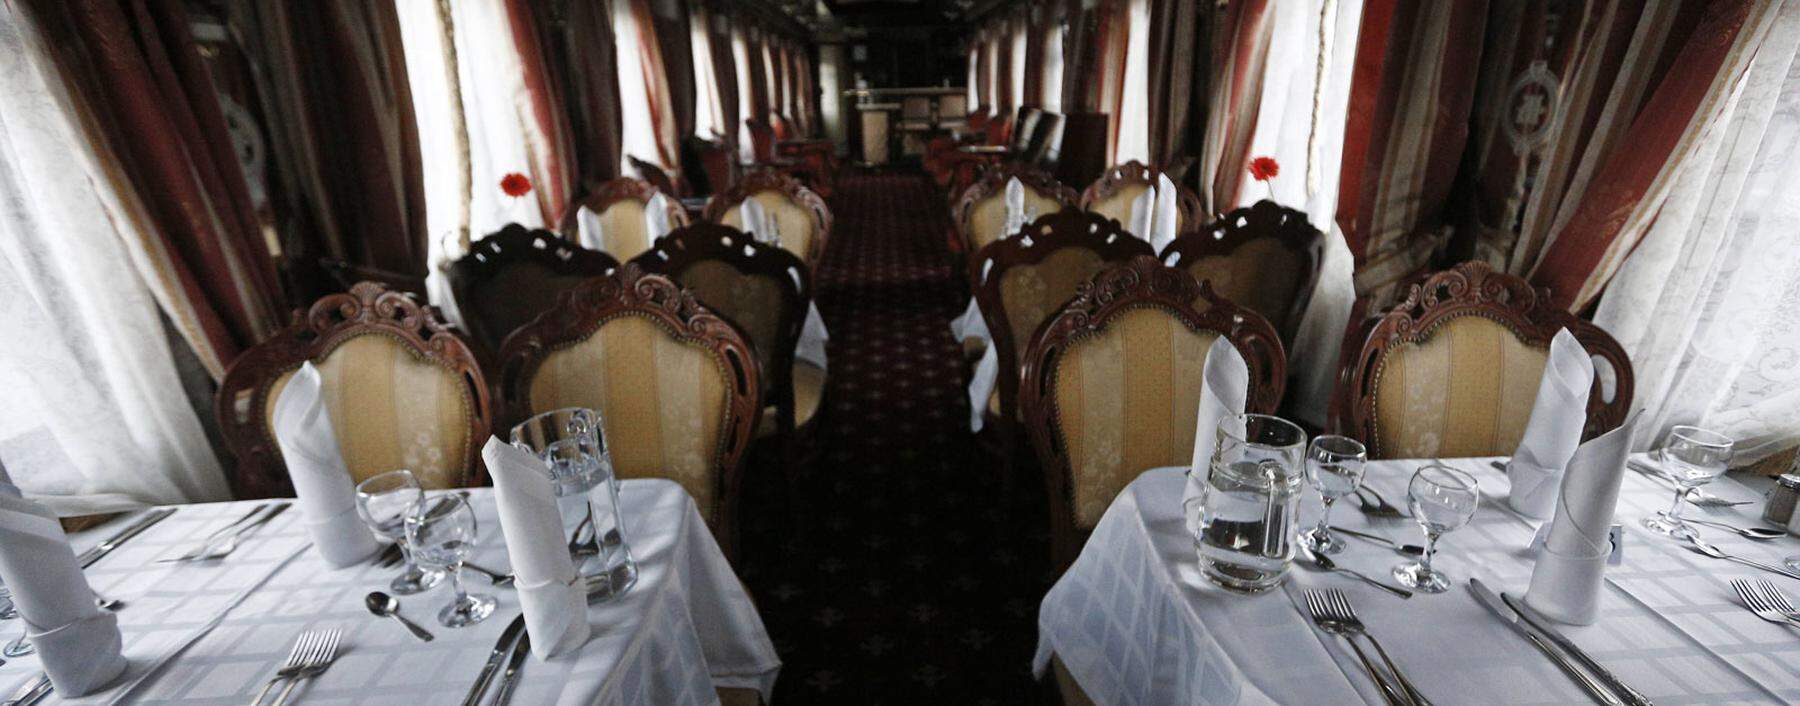 Essenszeit in der Transsibirischen Eisenbahn